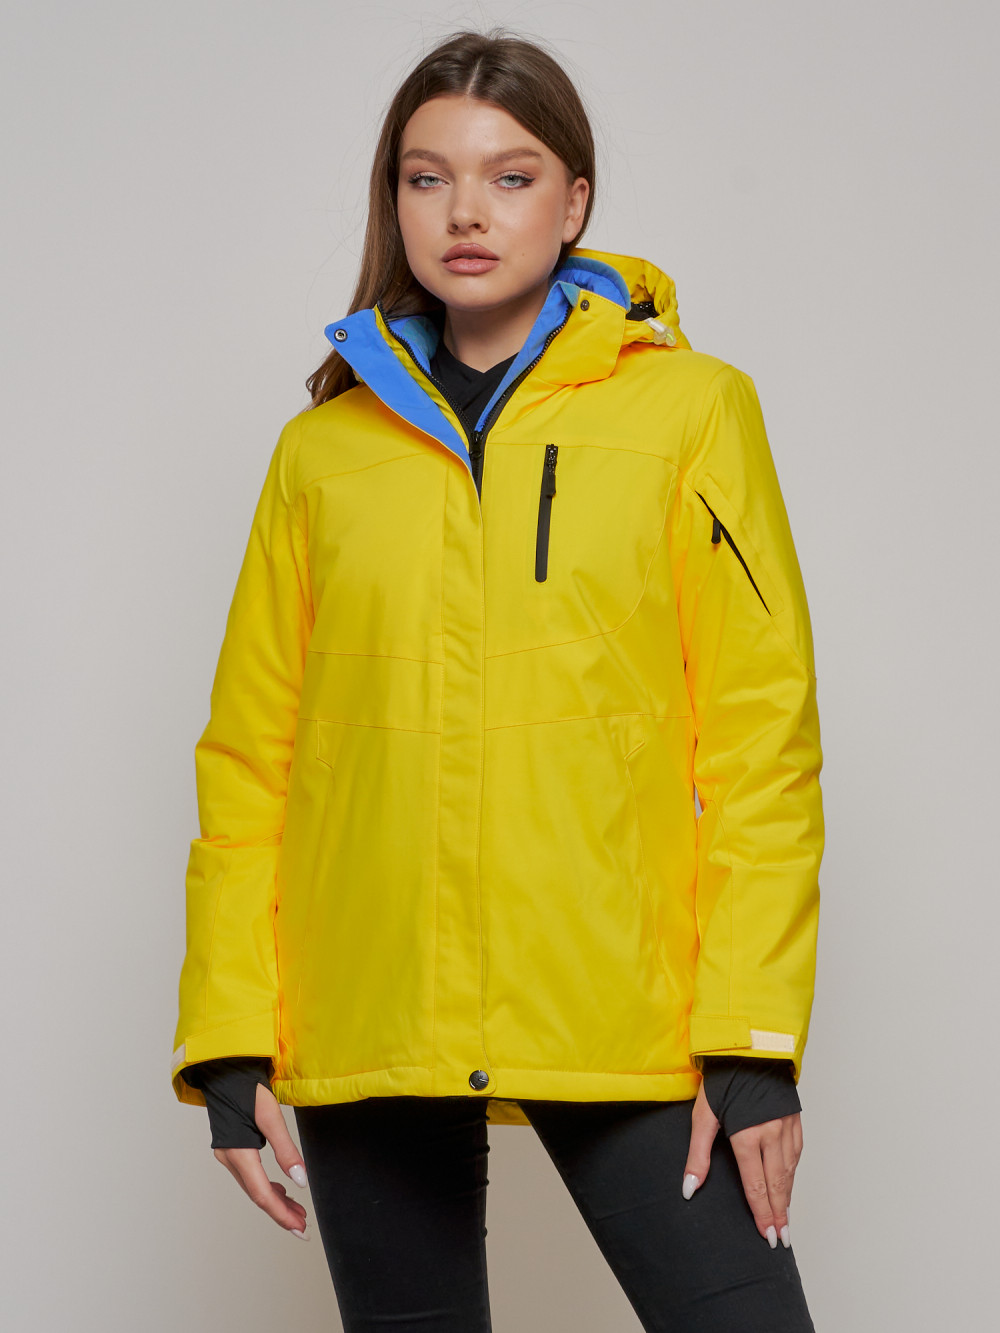 Купить оптом Горнолыжная куртка женская зимняя желтого цвета 05J в Казани